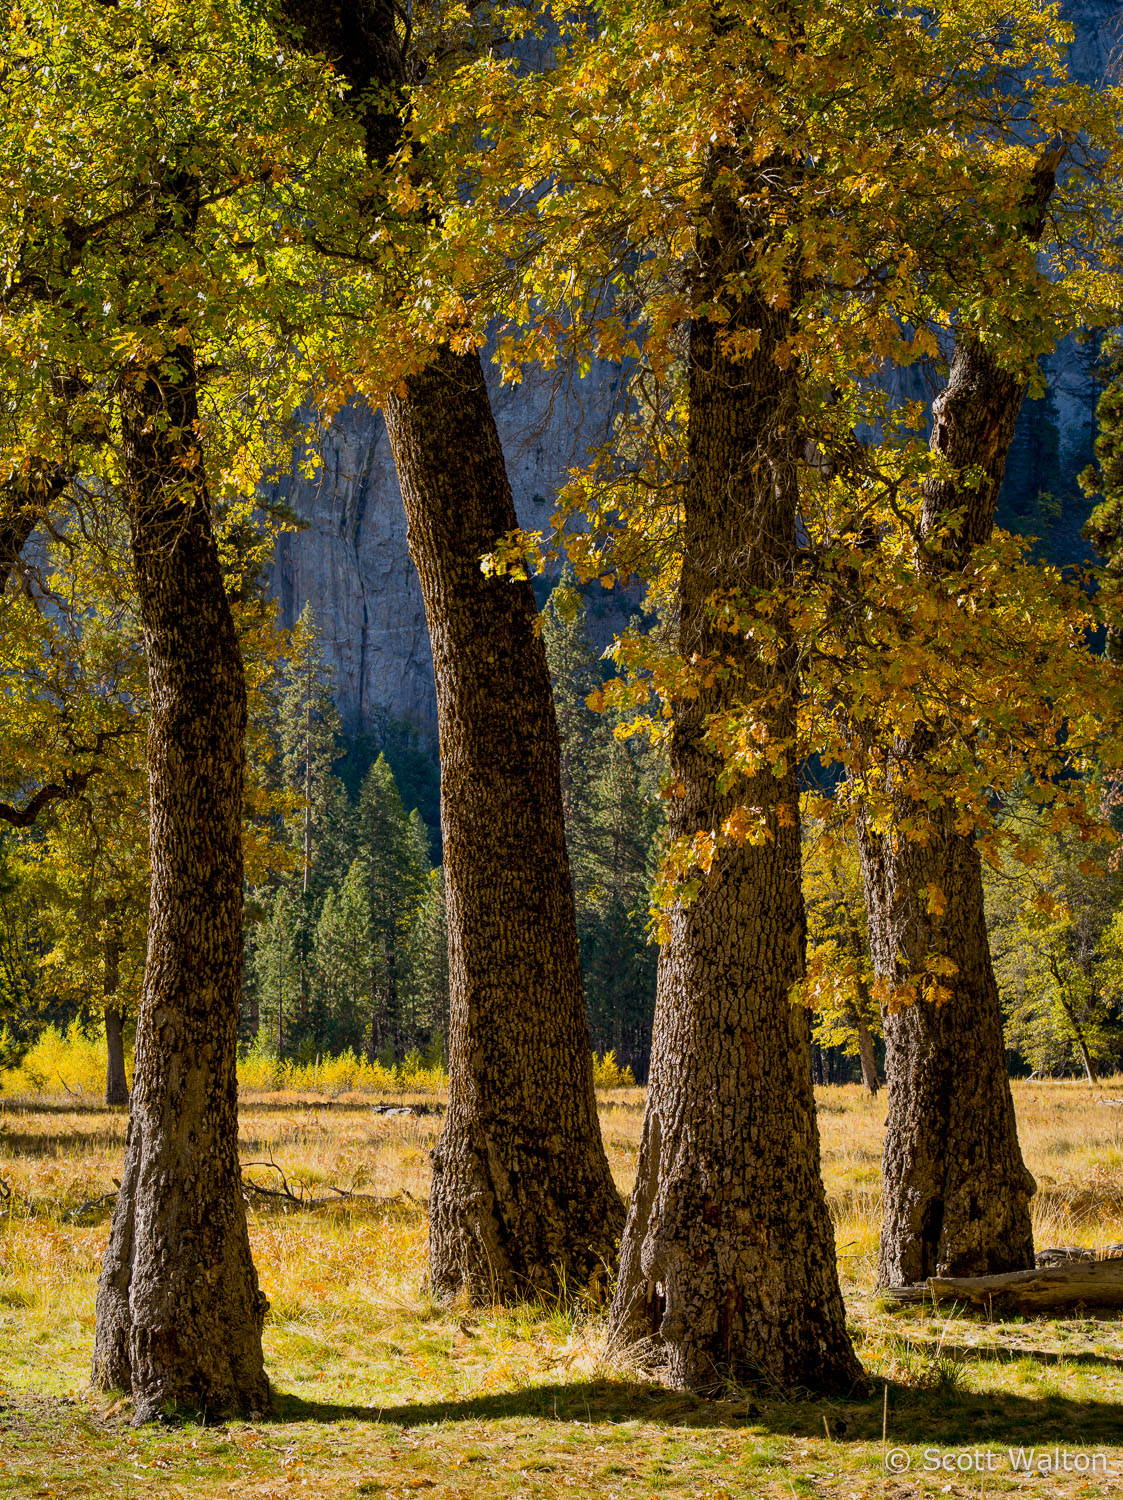 black-oak-trees-el-capitan-meadow-vertical-sunlight-yosemite-california.jpg